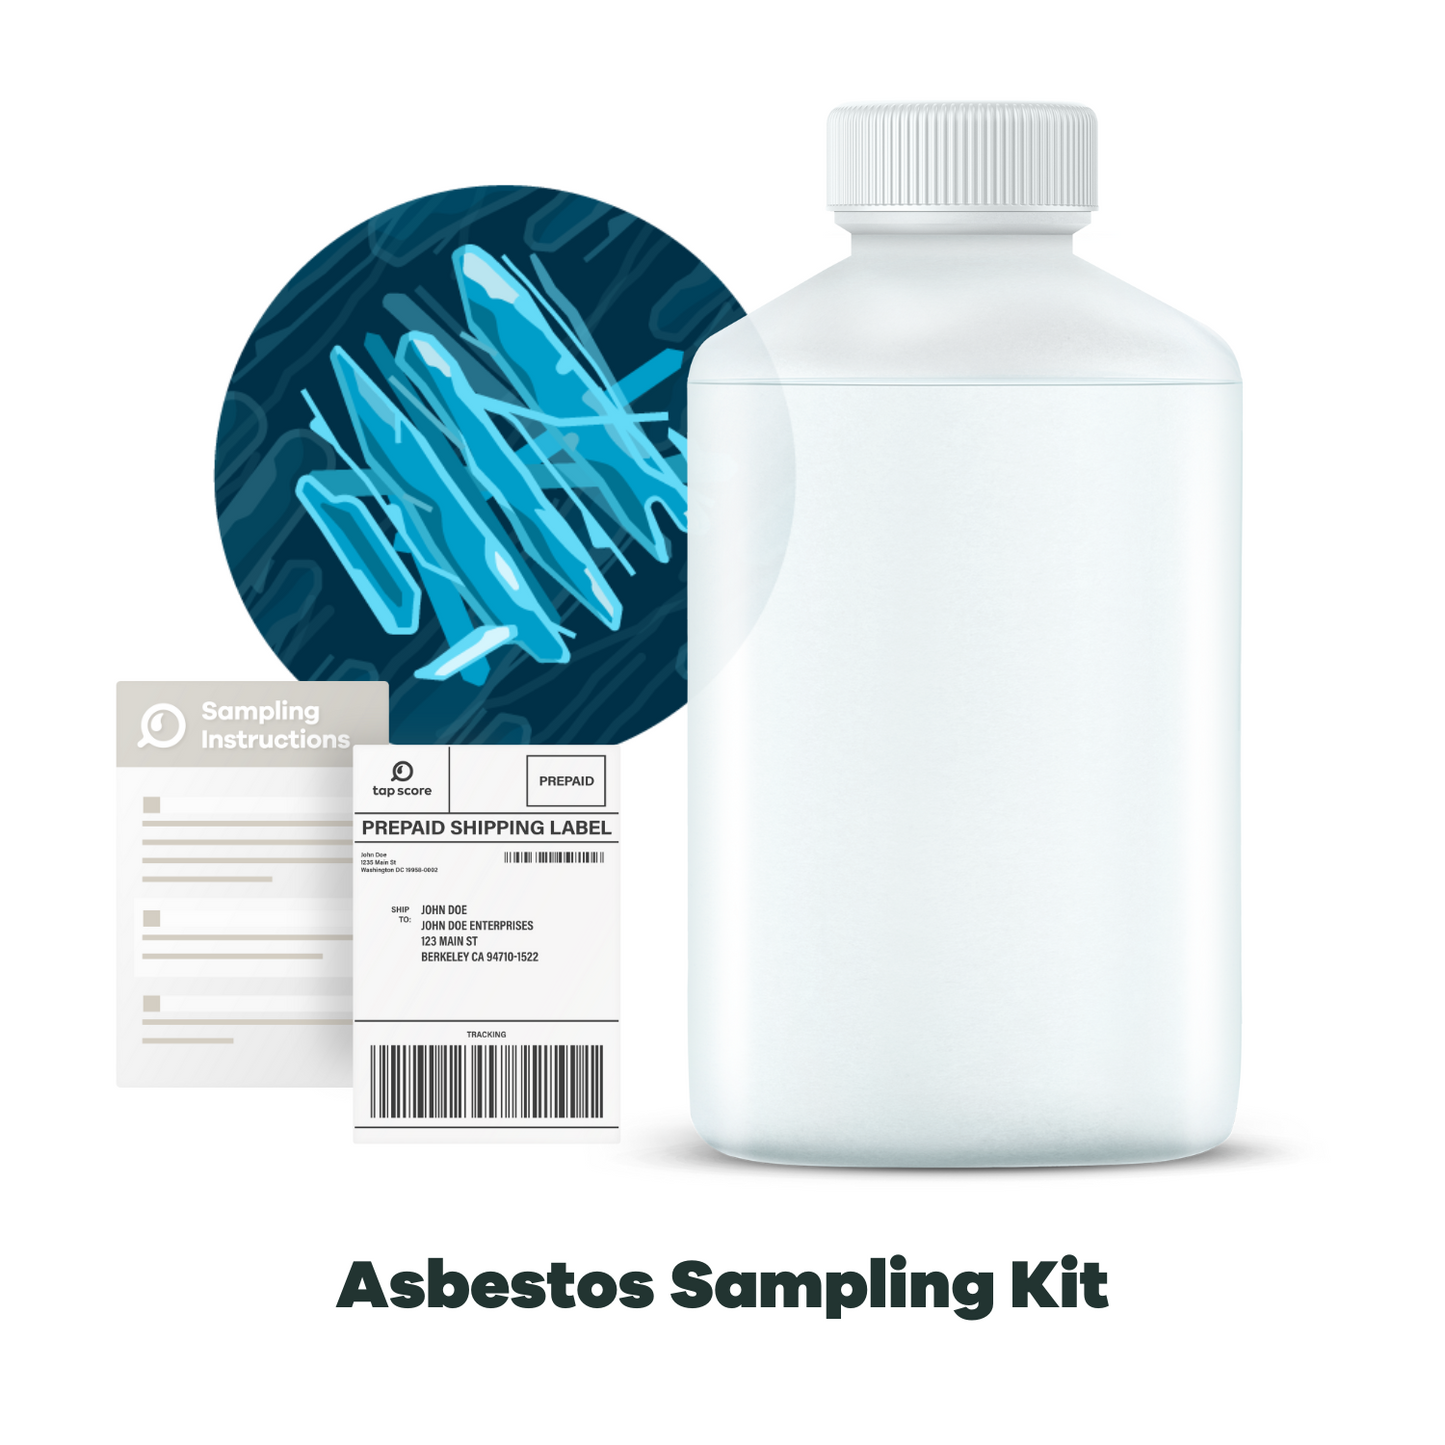 Asbestos Sampling Kit for Drinking Water